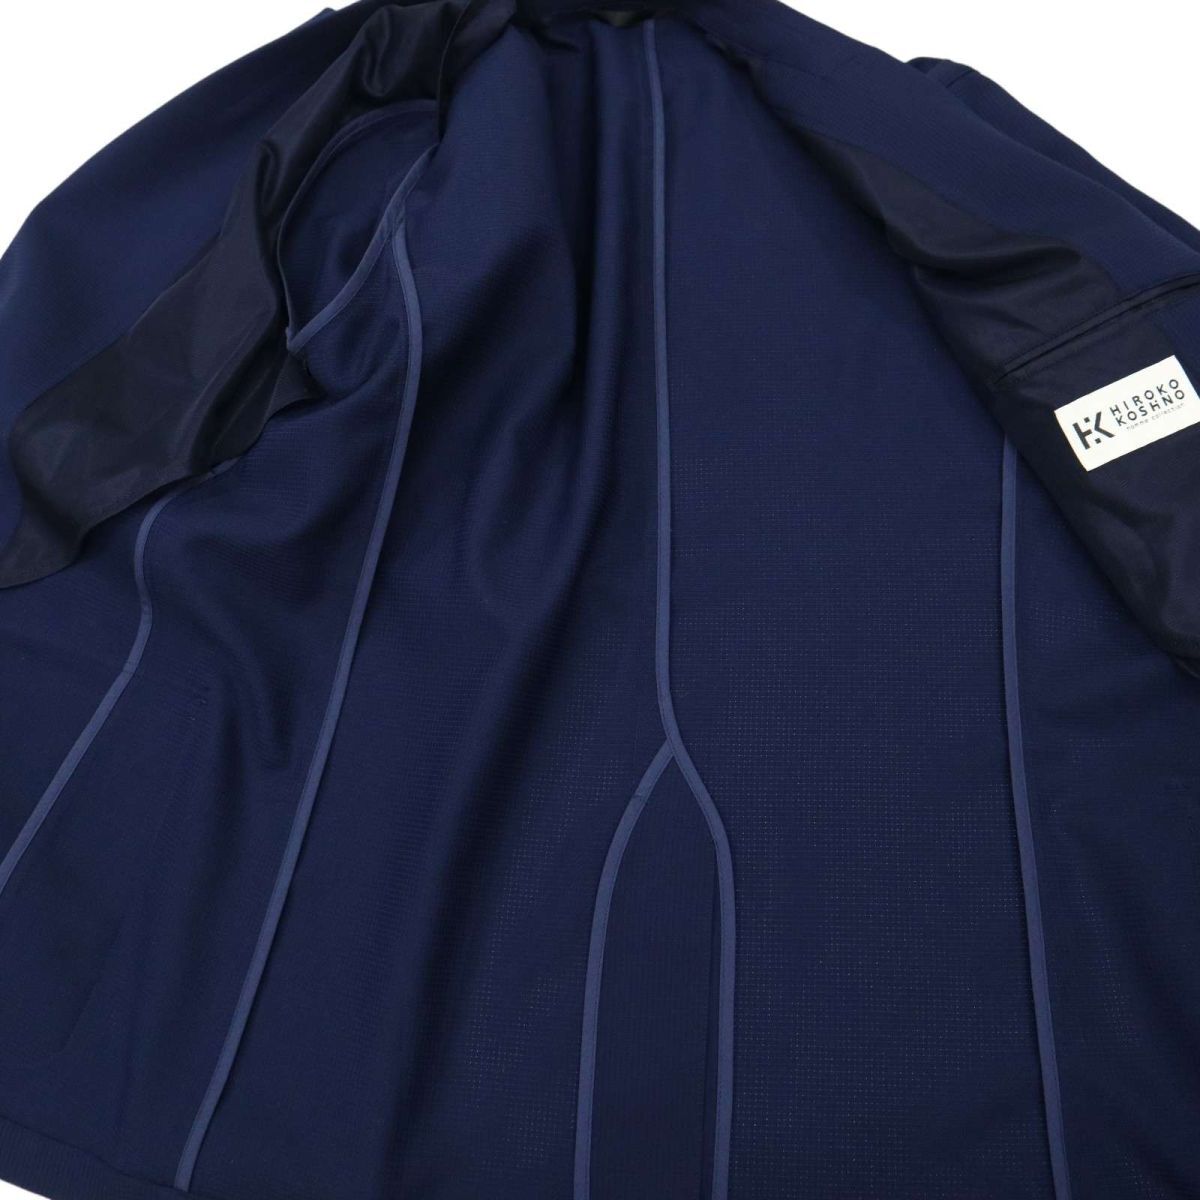 HIROKO KOSHINO homme collection ヒロココシノ 春夏 3B テーラード ジャケット Sz.LL メンズ ネイビー 大きいサイズ C4T01497_2#Mの画像5